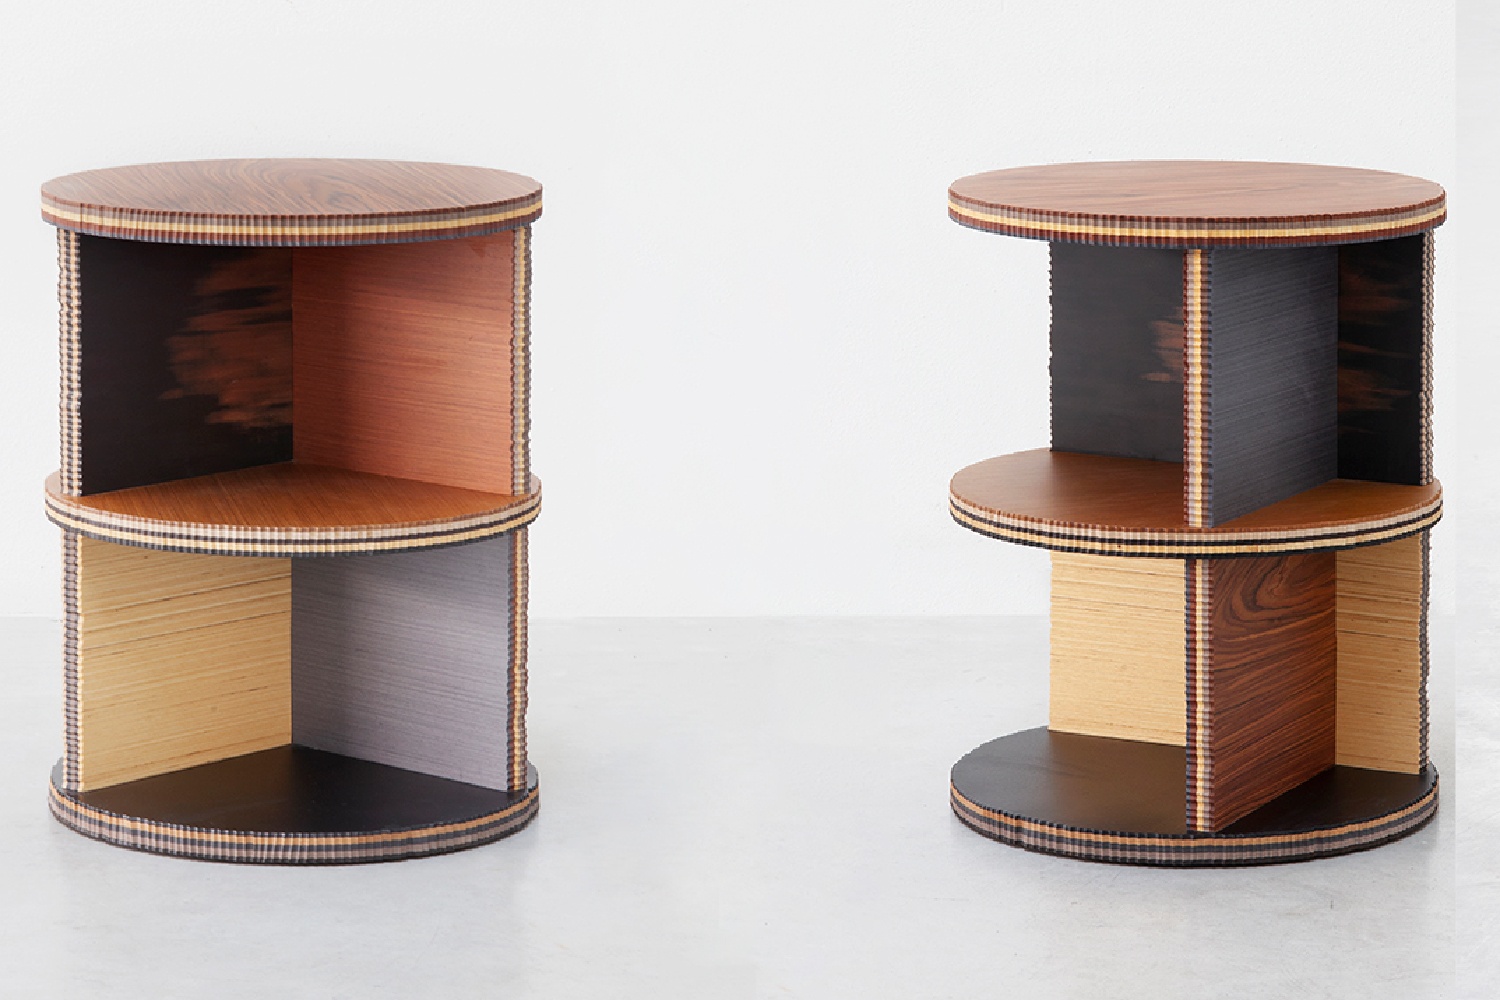 Il legno di recupero ALPI nella nuova collezione di tavoli “George”,  progettati da Marco Campardo per la SEEDS London Gallery